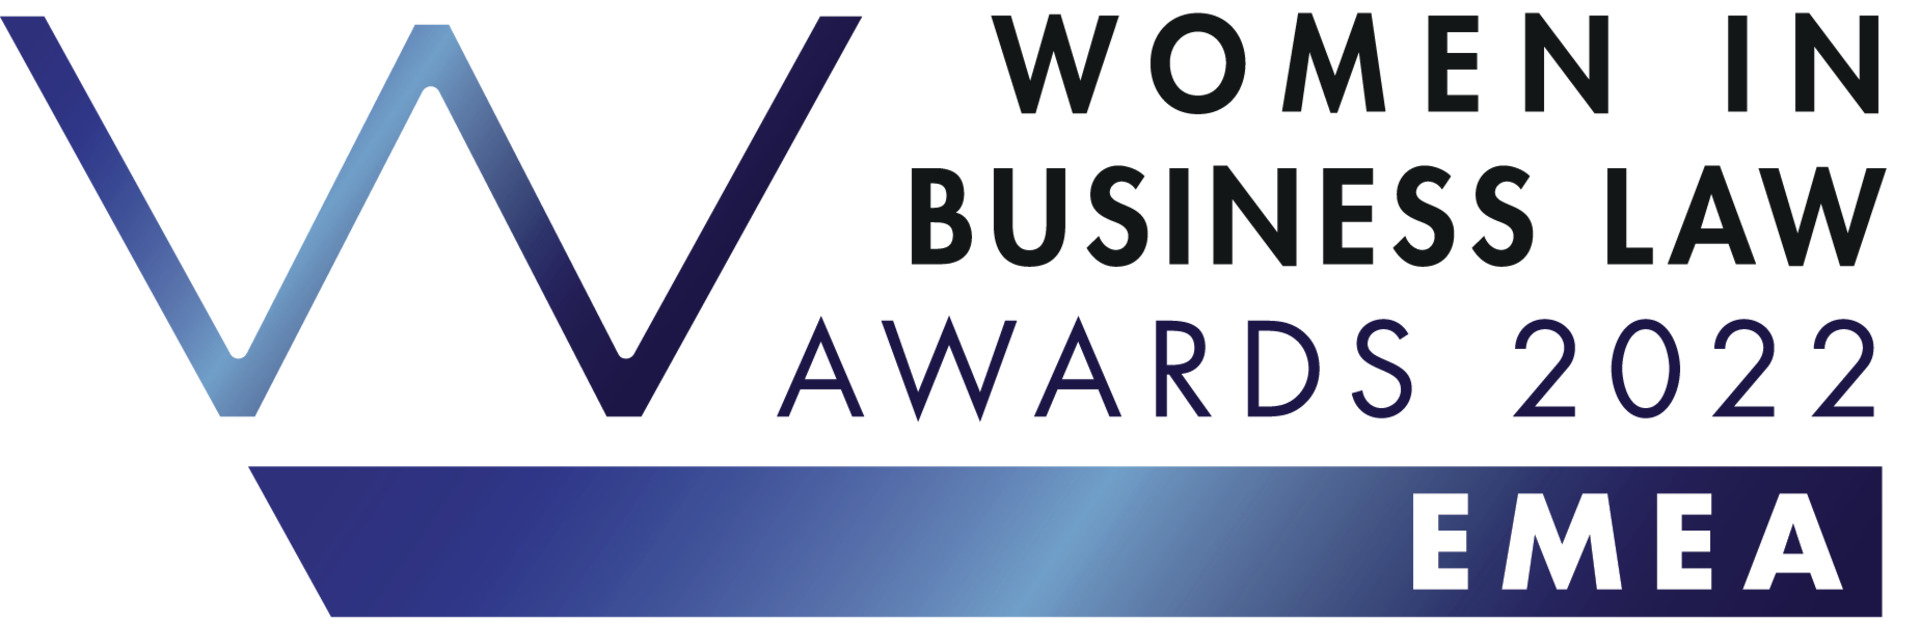 GOLAW стала єдиною українською юридичною фірмою, що отримала визнання міжнародного рейтингу “Women in Business Law 2022”